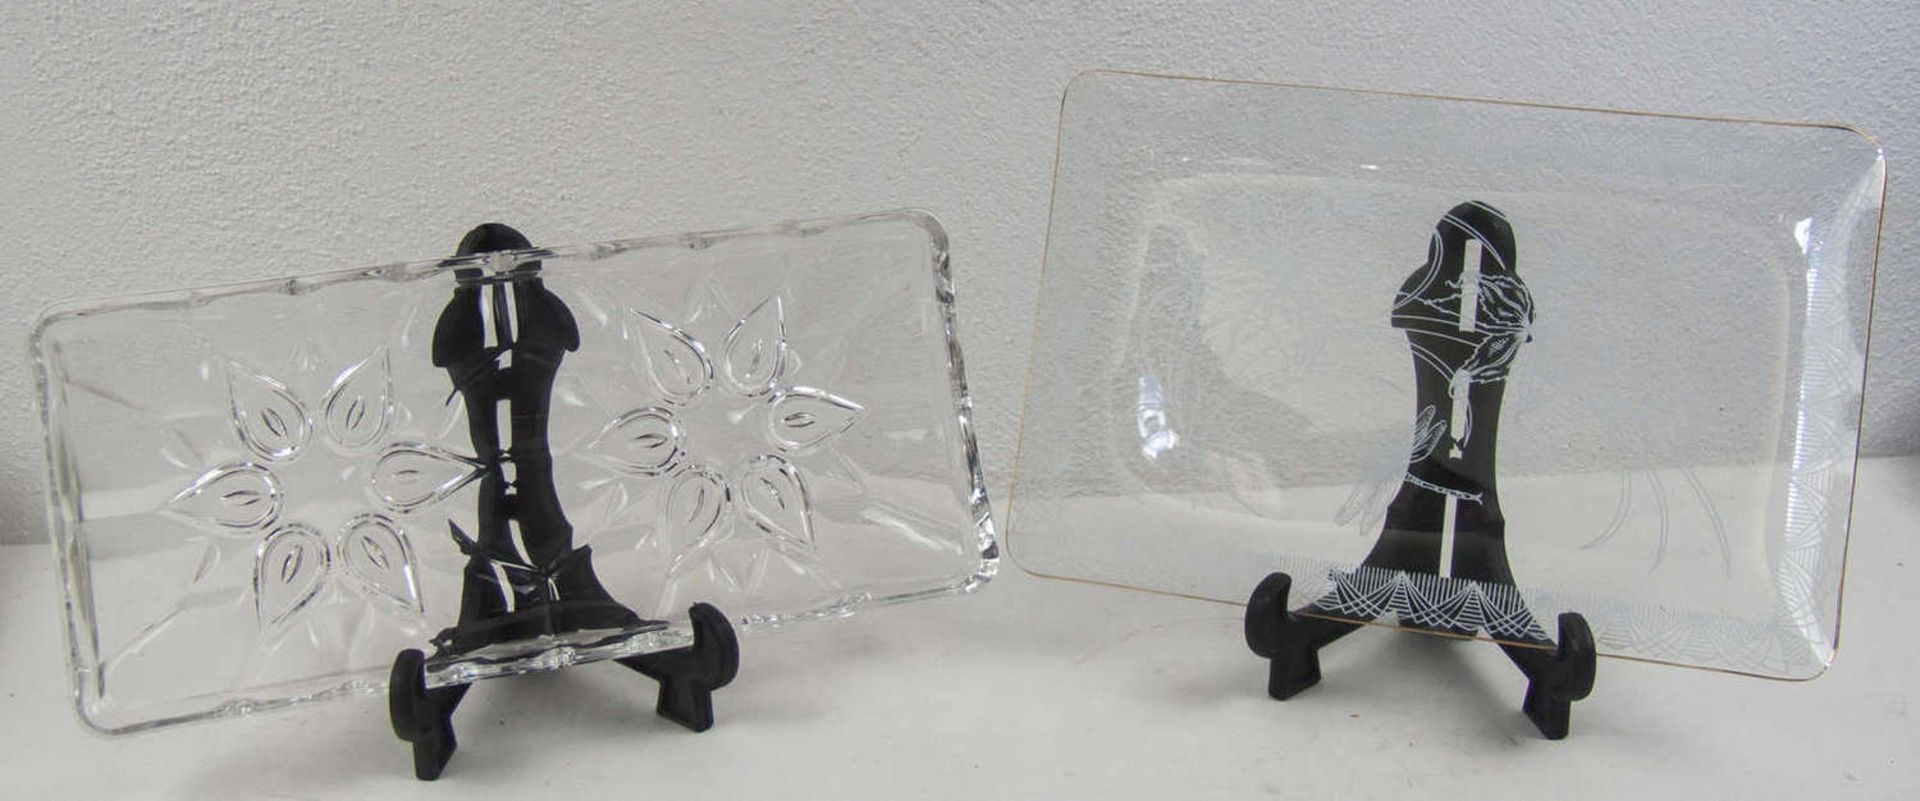 Zwei Kuchen - Platten, Glas, davon 1 x ca. 50er Jahre mit dünnwangigem Glas und feiner Verzierung